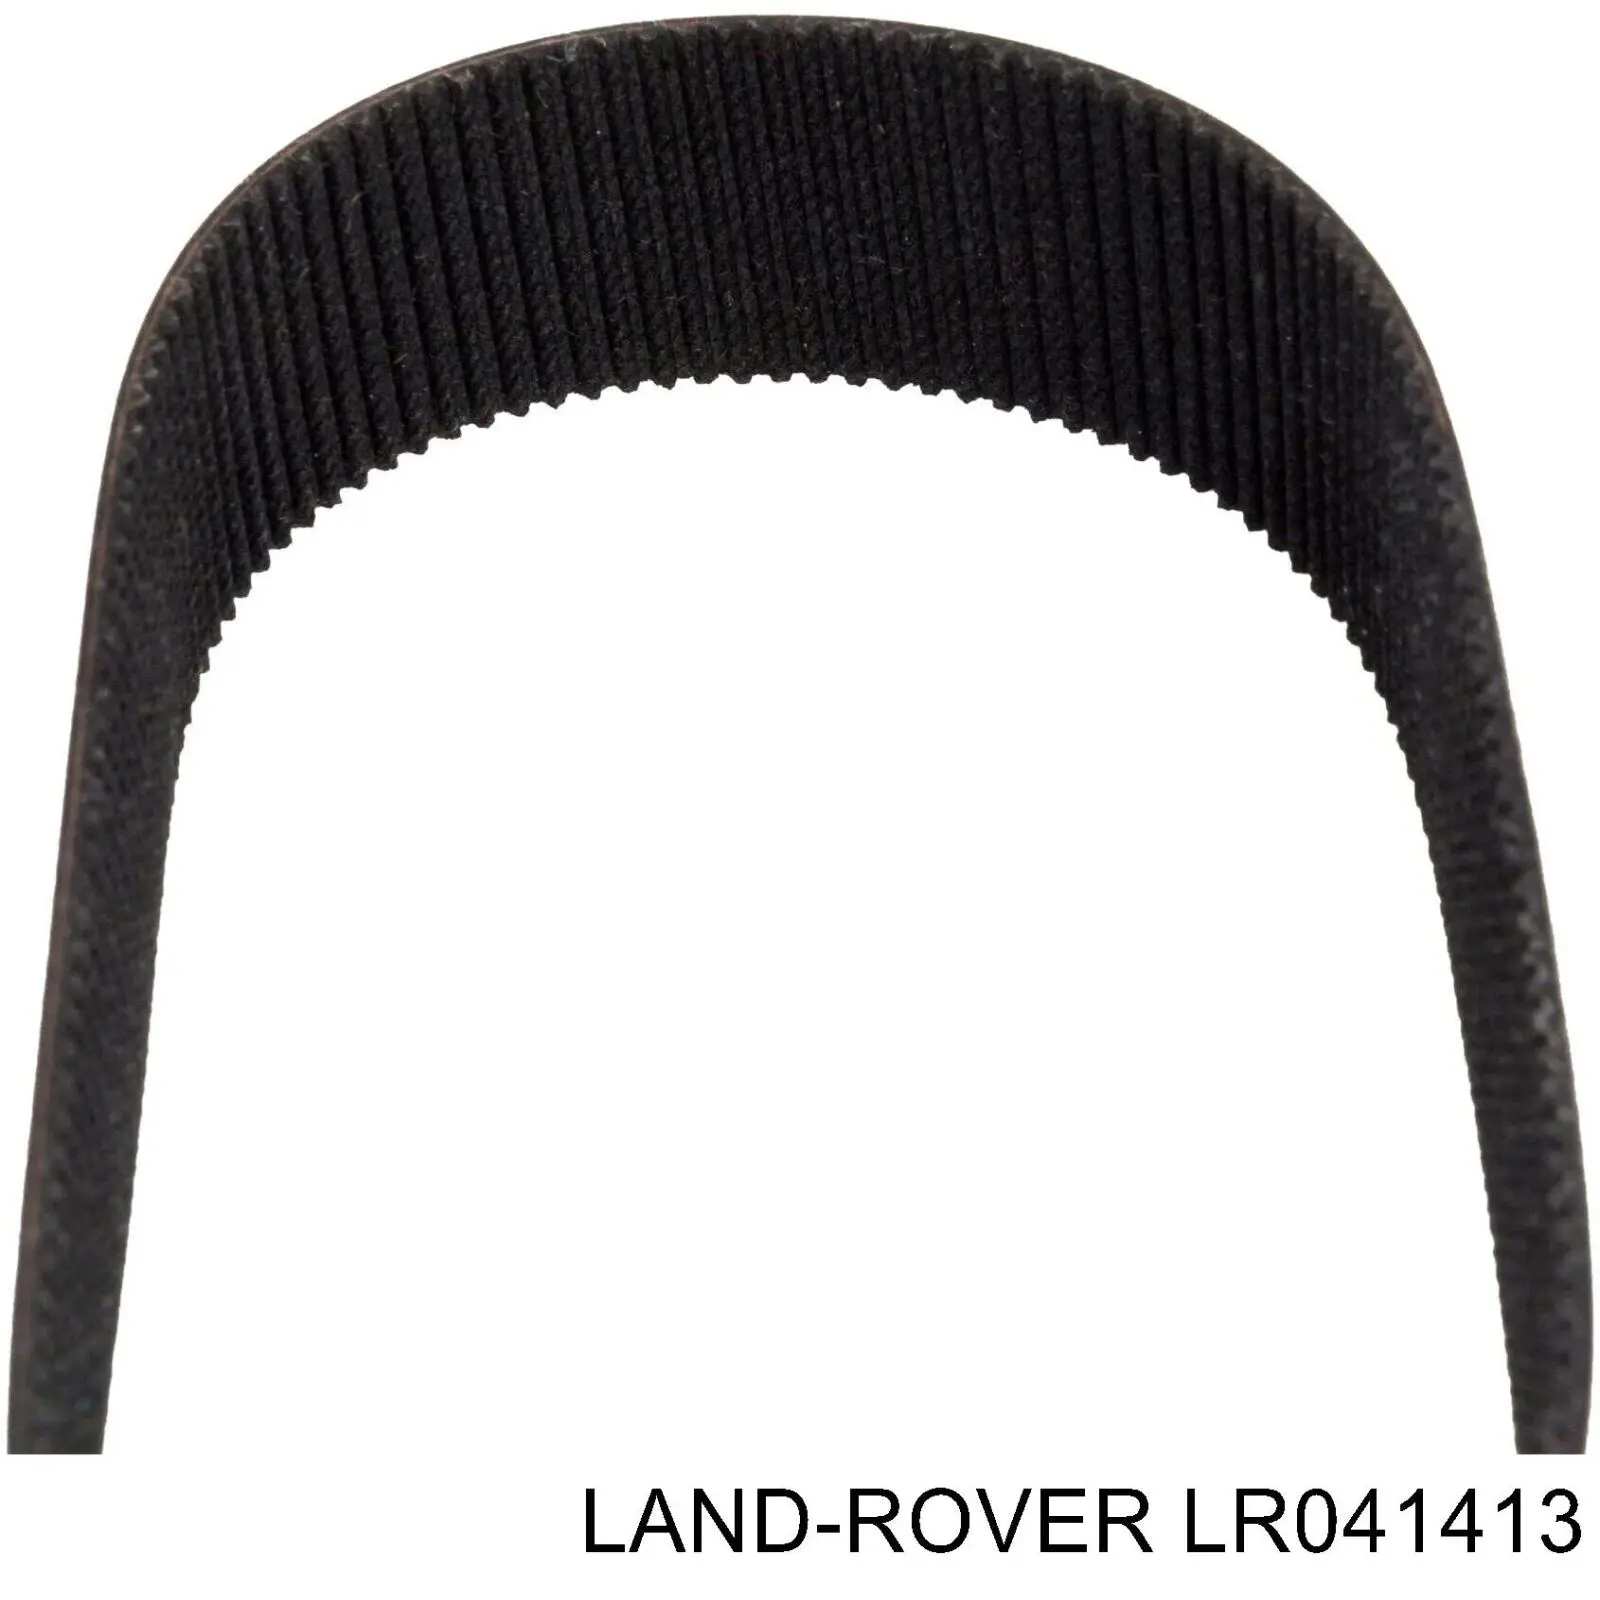 LR041413 Land Rover cremallera de dirección